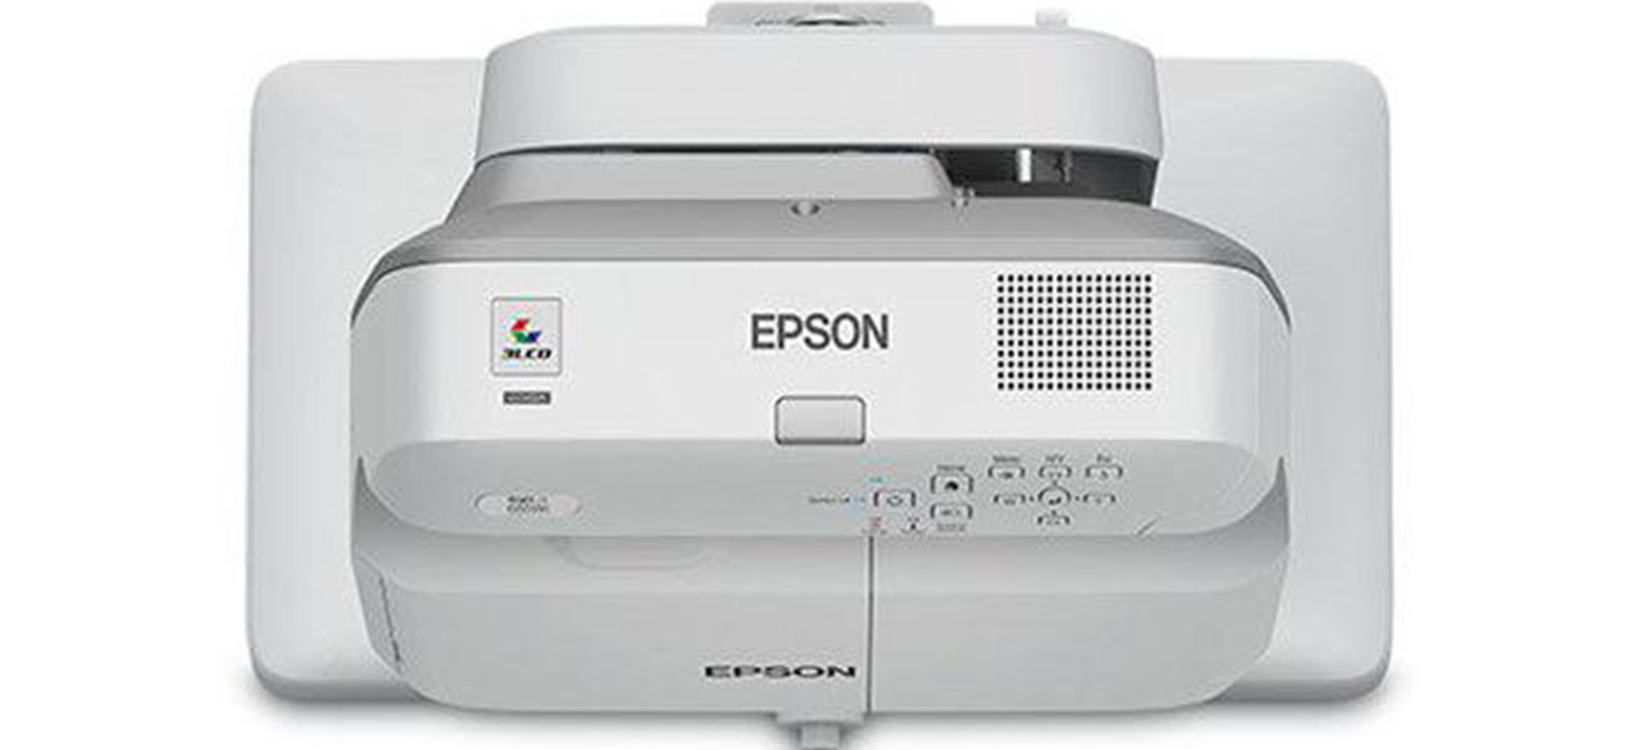 Máy Chiếu Gần Epson EB 1460Ui 2